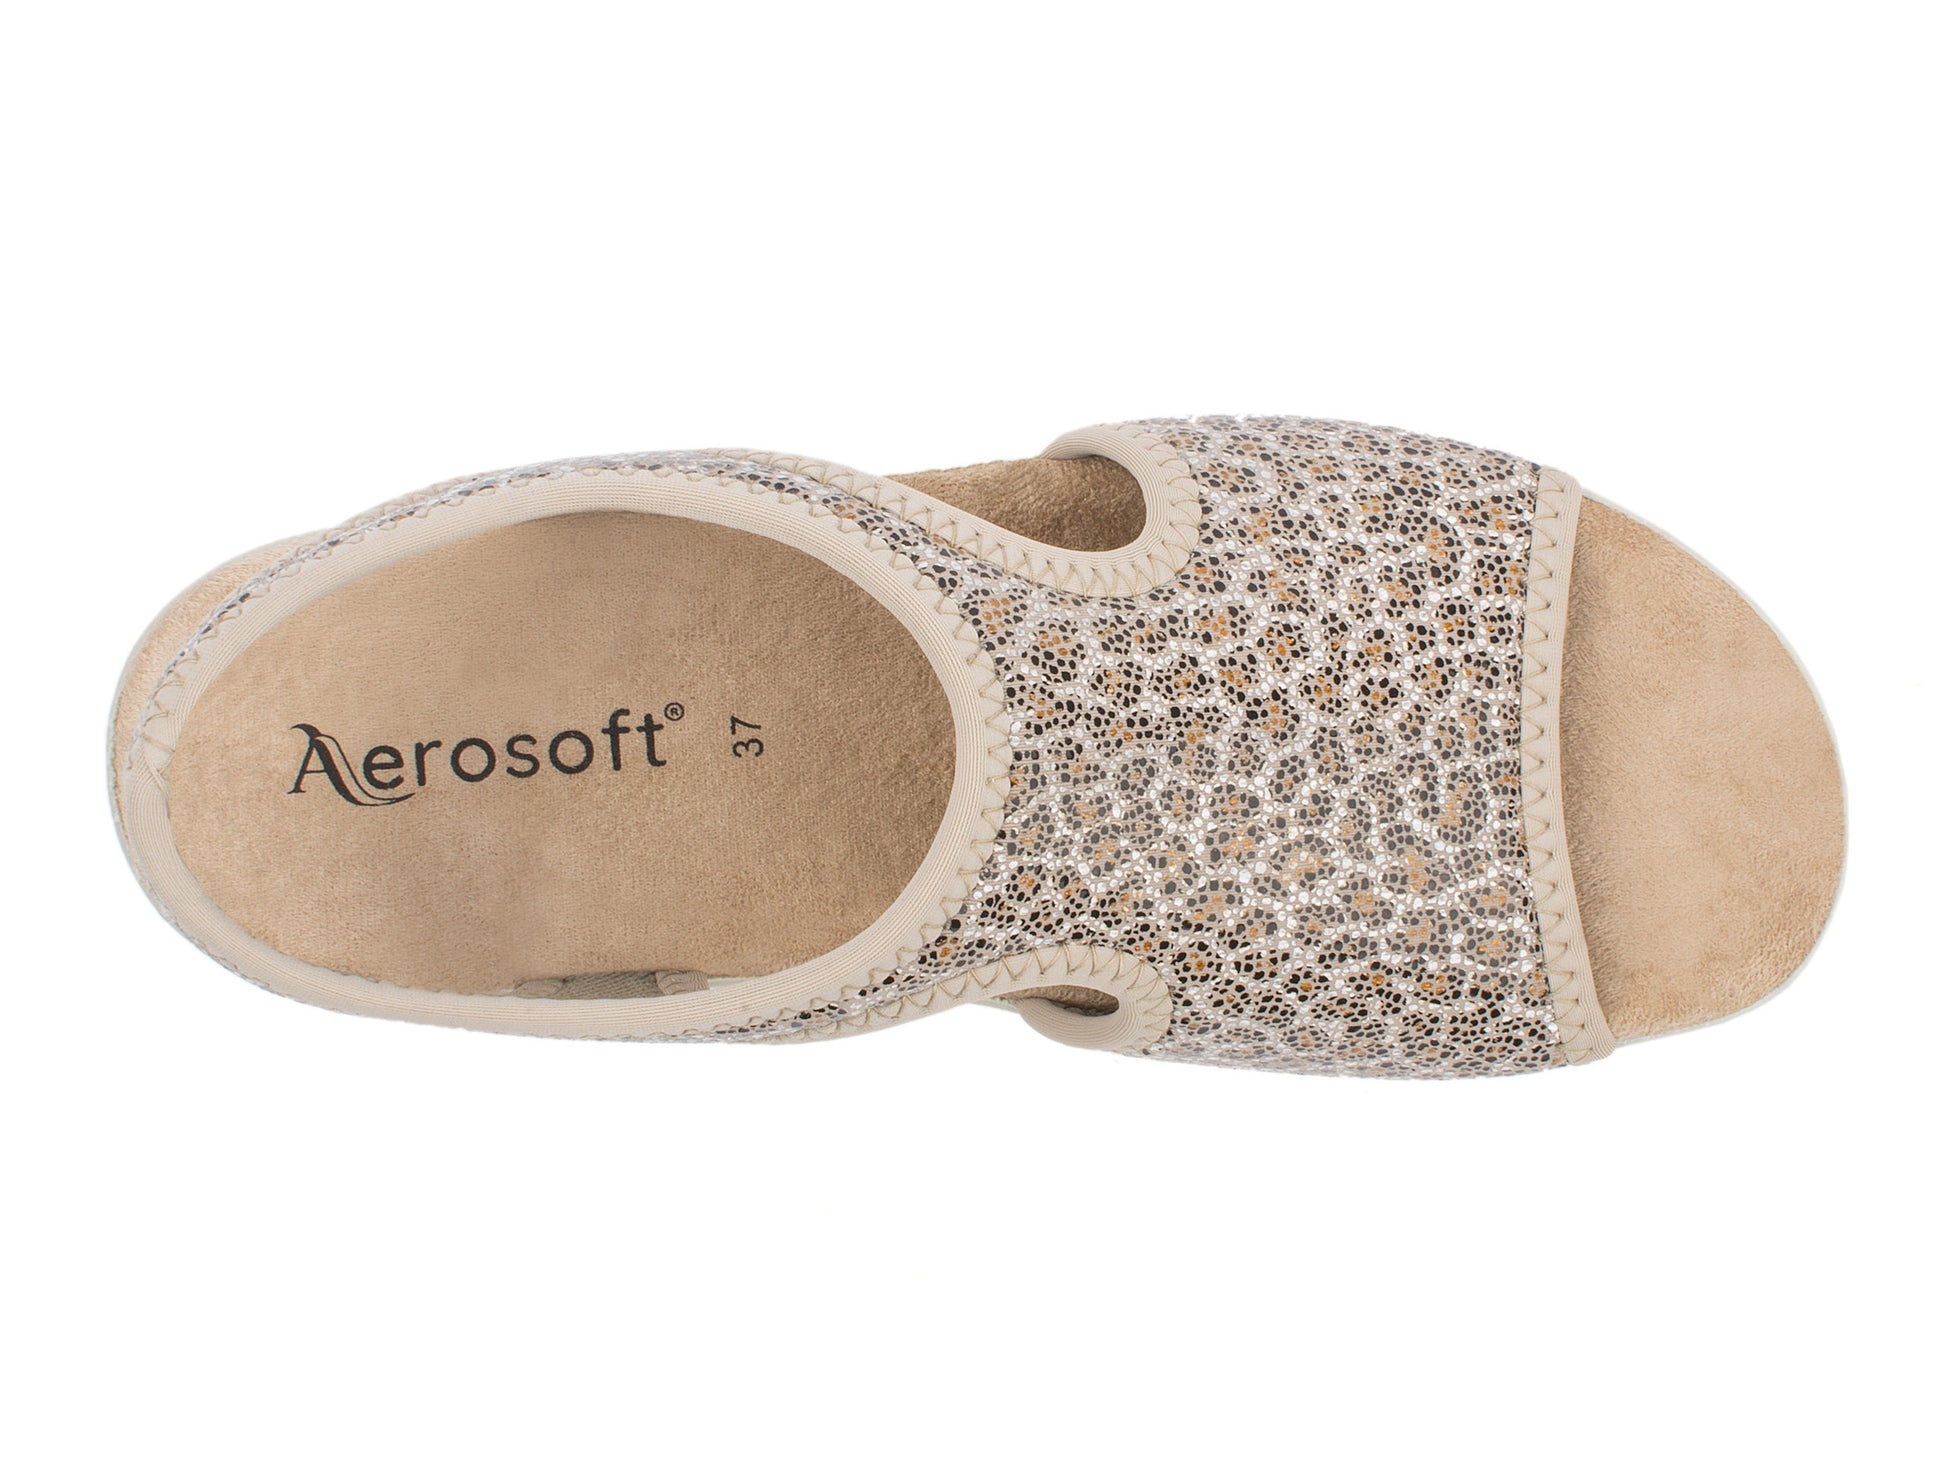 Damen Stretch Sandalette Modell Stretch 05 von Aerosoft in der Farbe Leopard beige von oben